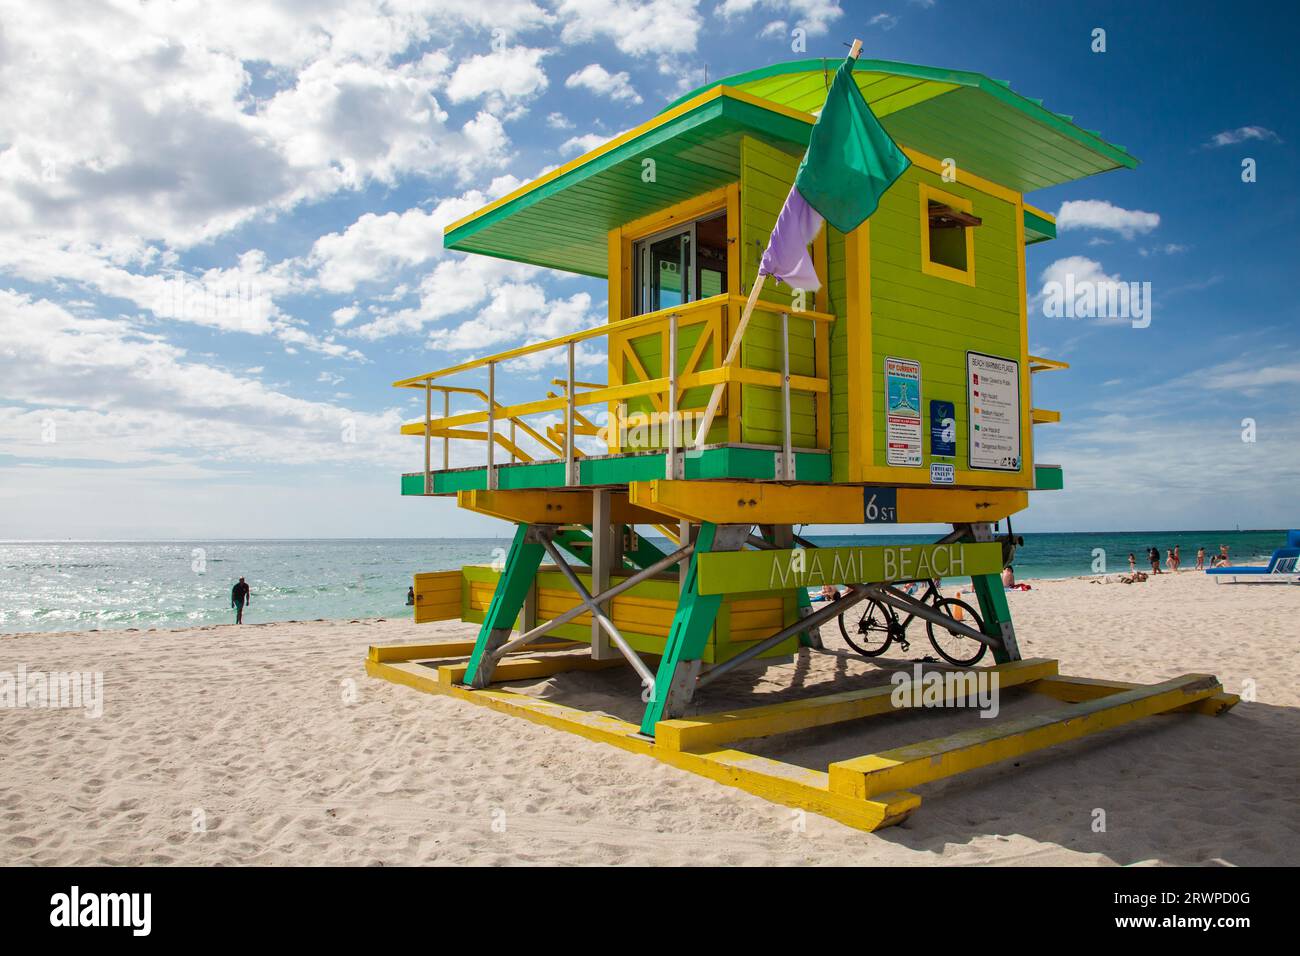 6th Street Lifeguard Tower, South Beach, ville de Miami Beach, Floride : poste de sauveteur peint en vert vif et jaune Banque D'Images